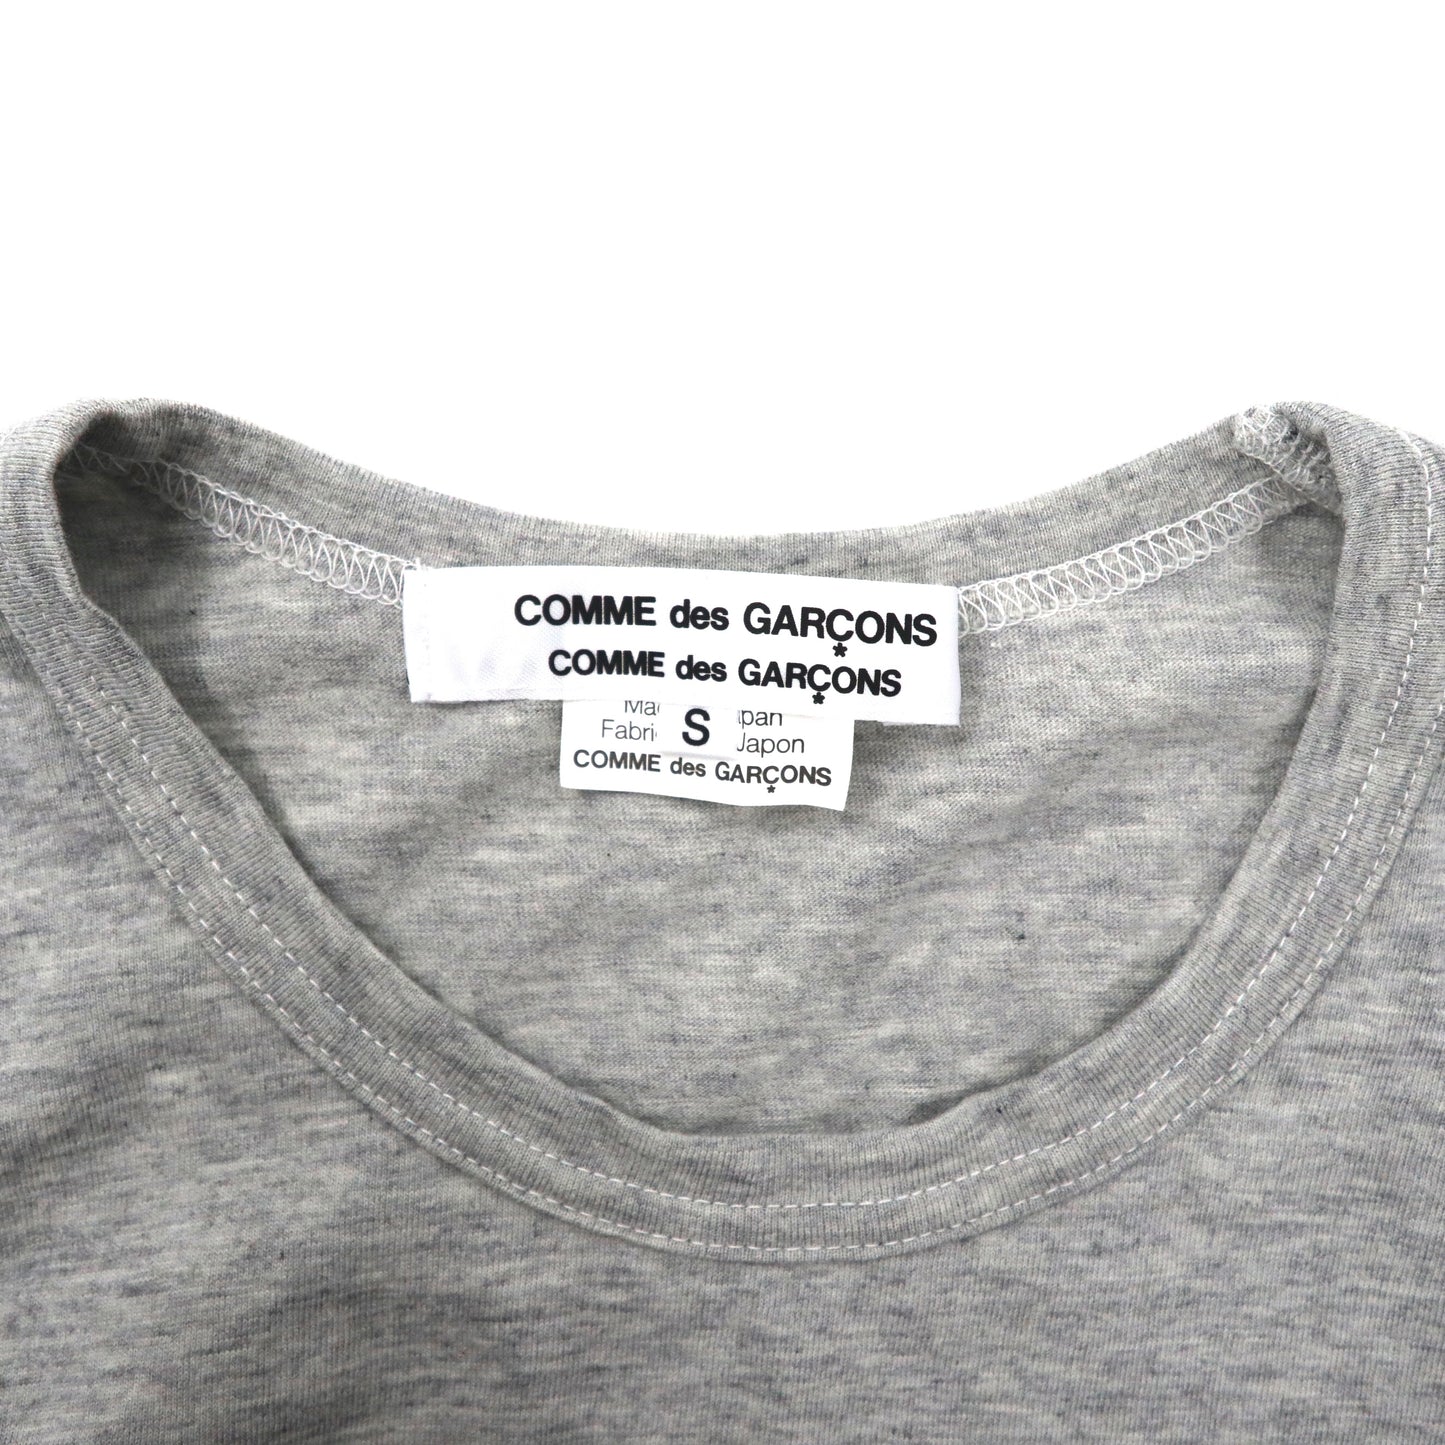 COMME des GARCONS クレイジーパターン ロングスリーブTシャツ S マルチカラー  コットン RT-T010 日本製